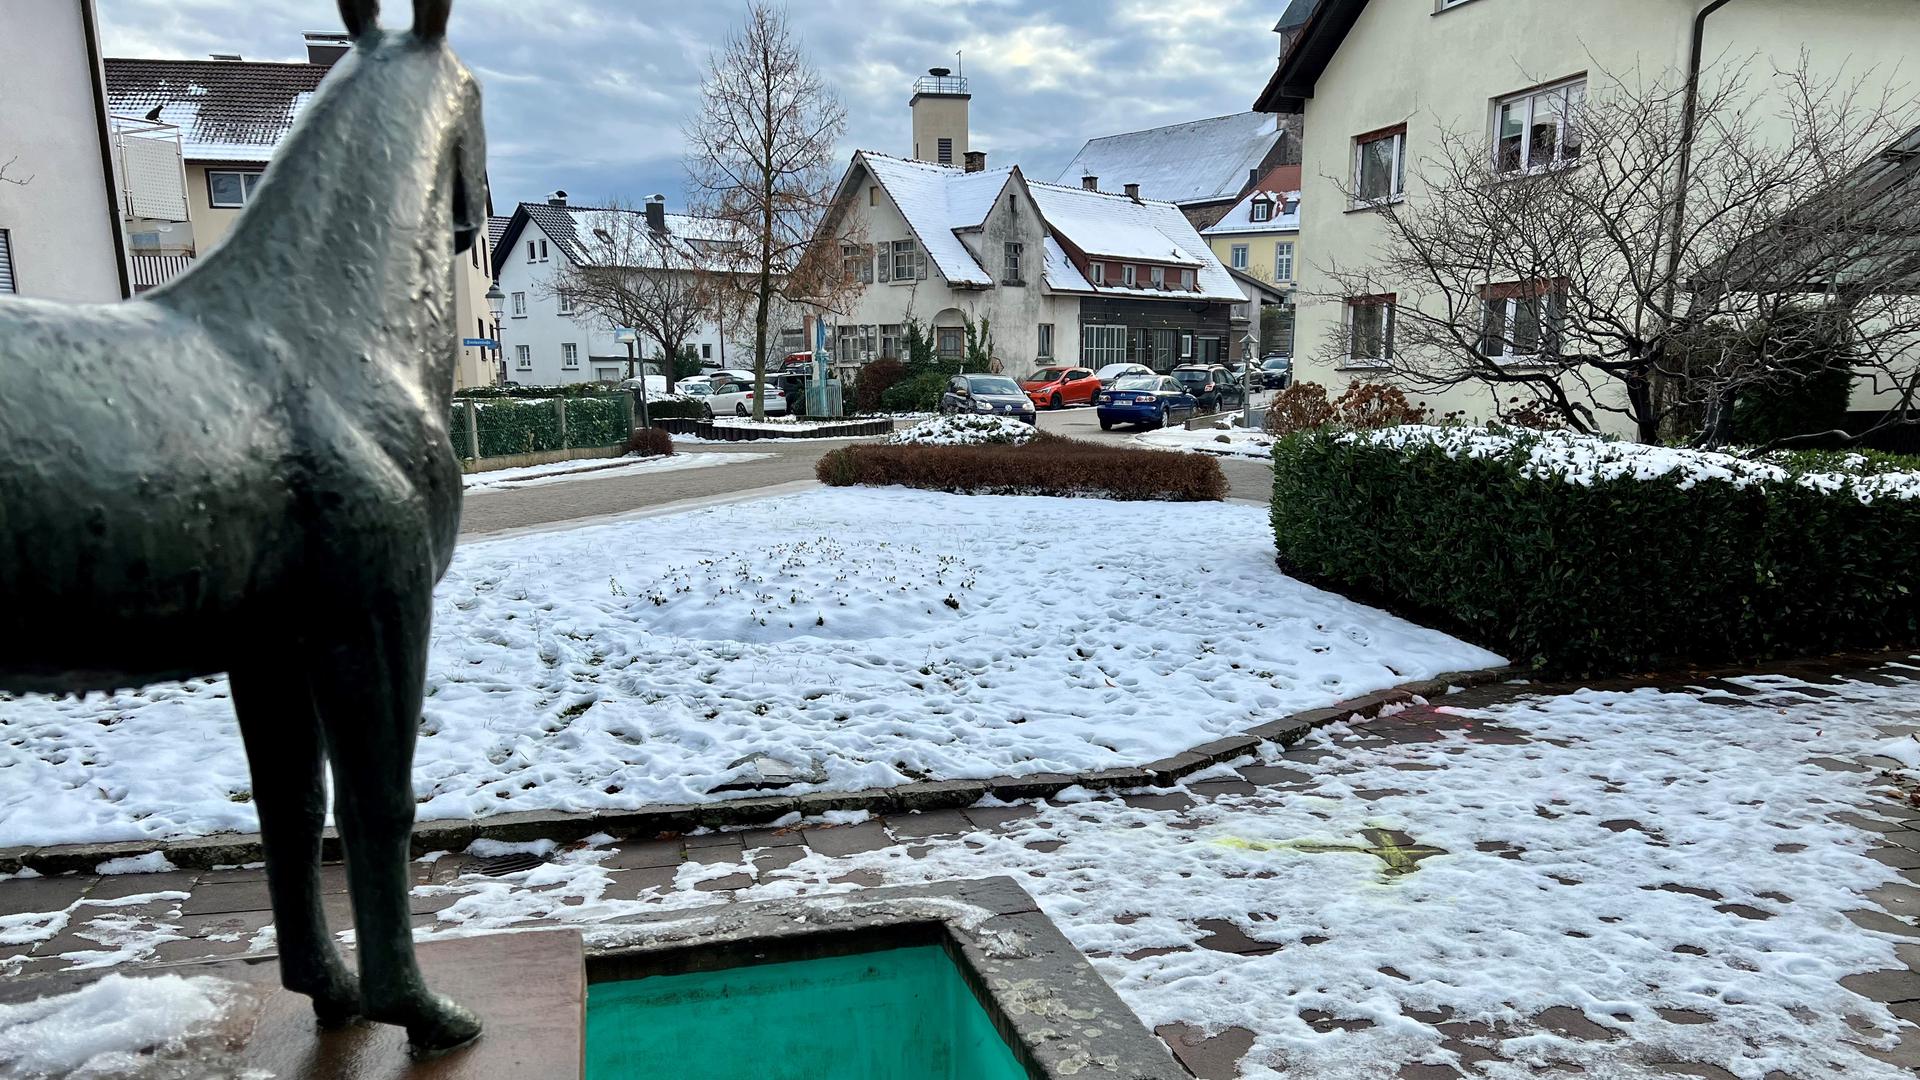 Spuren im Schnee: Die Polizei hat mehrere Stellen des Tatorts mit gelber und grüner Sprühfarbe markiert. Details zum Tatablauf geben die Ermittler bislang nicht bekannt.